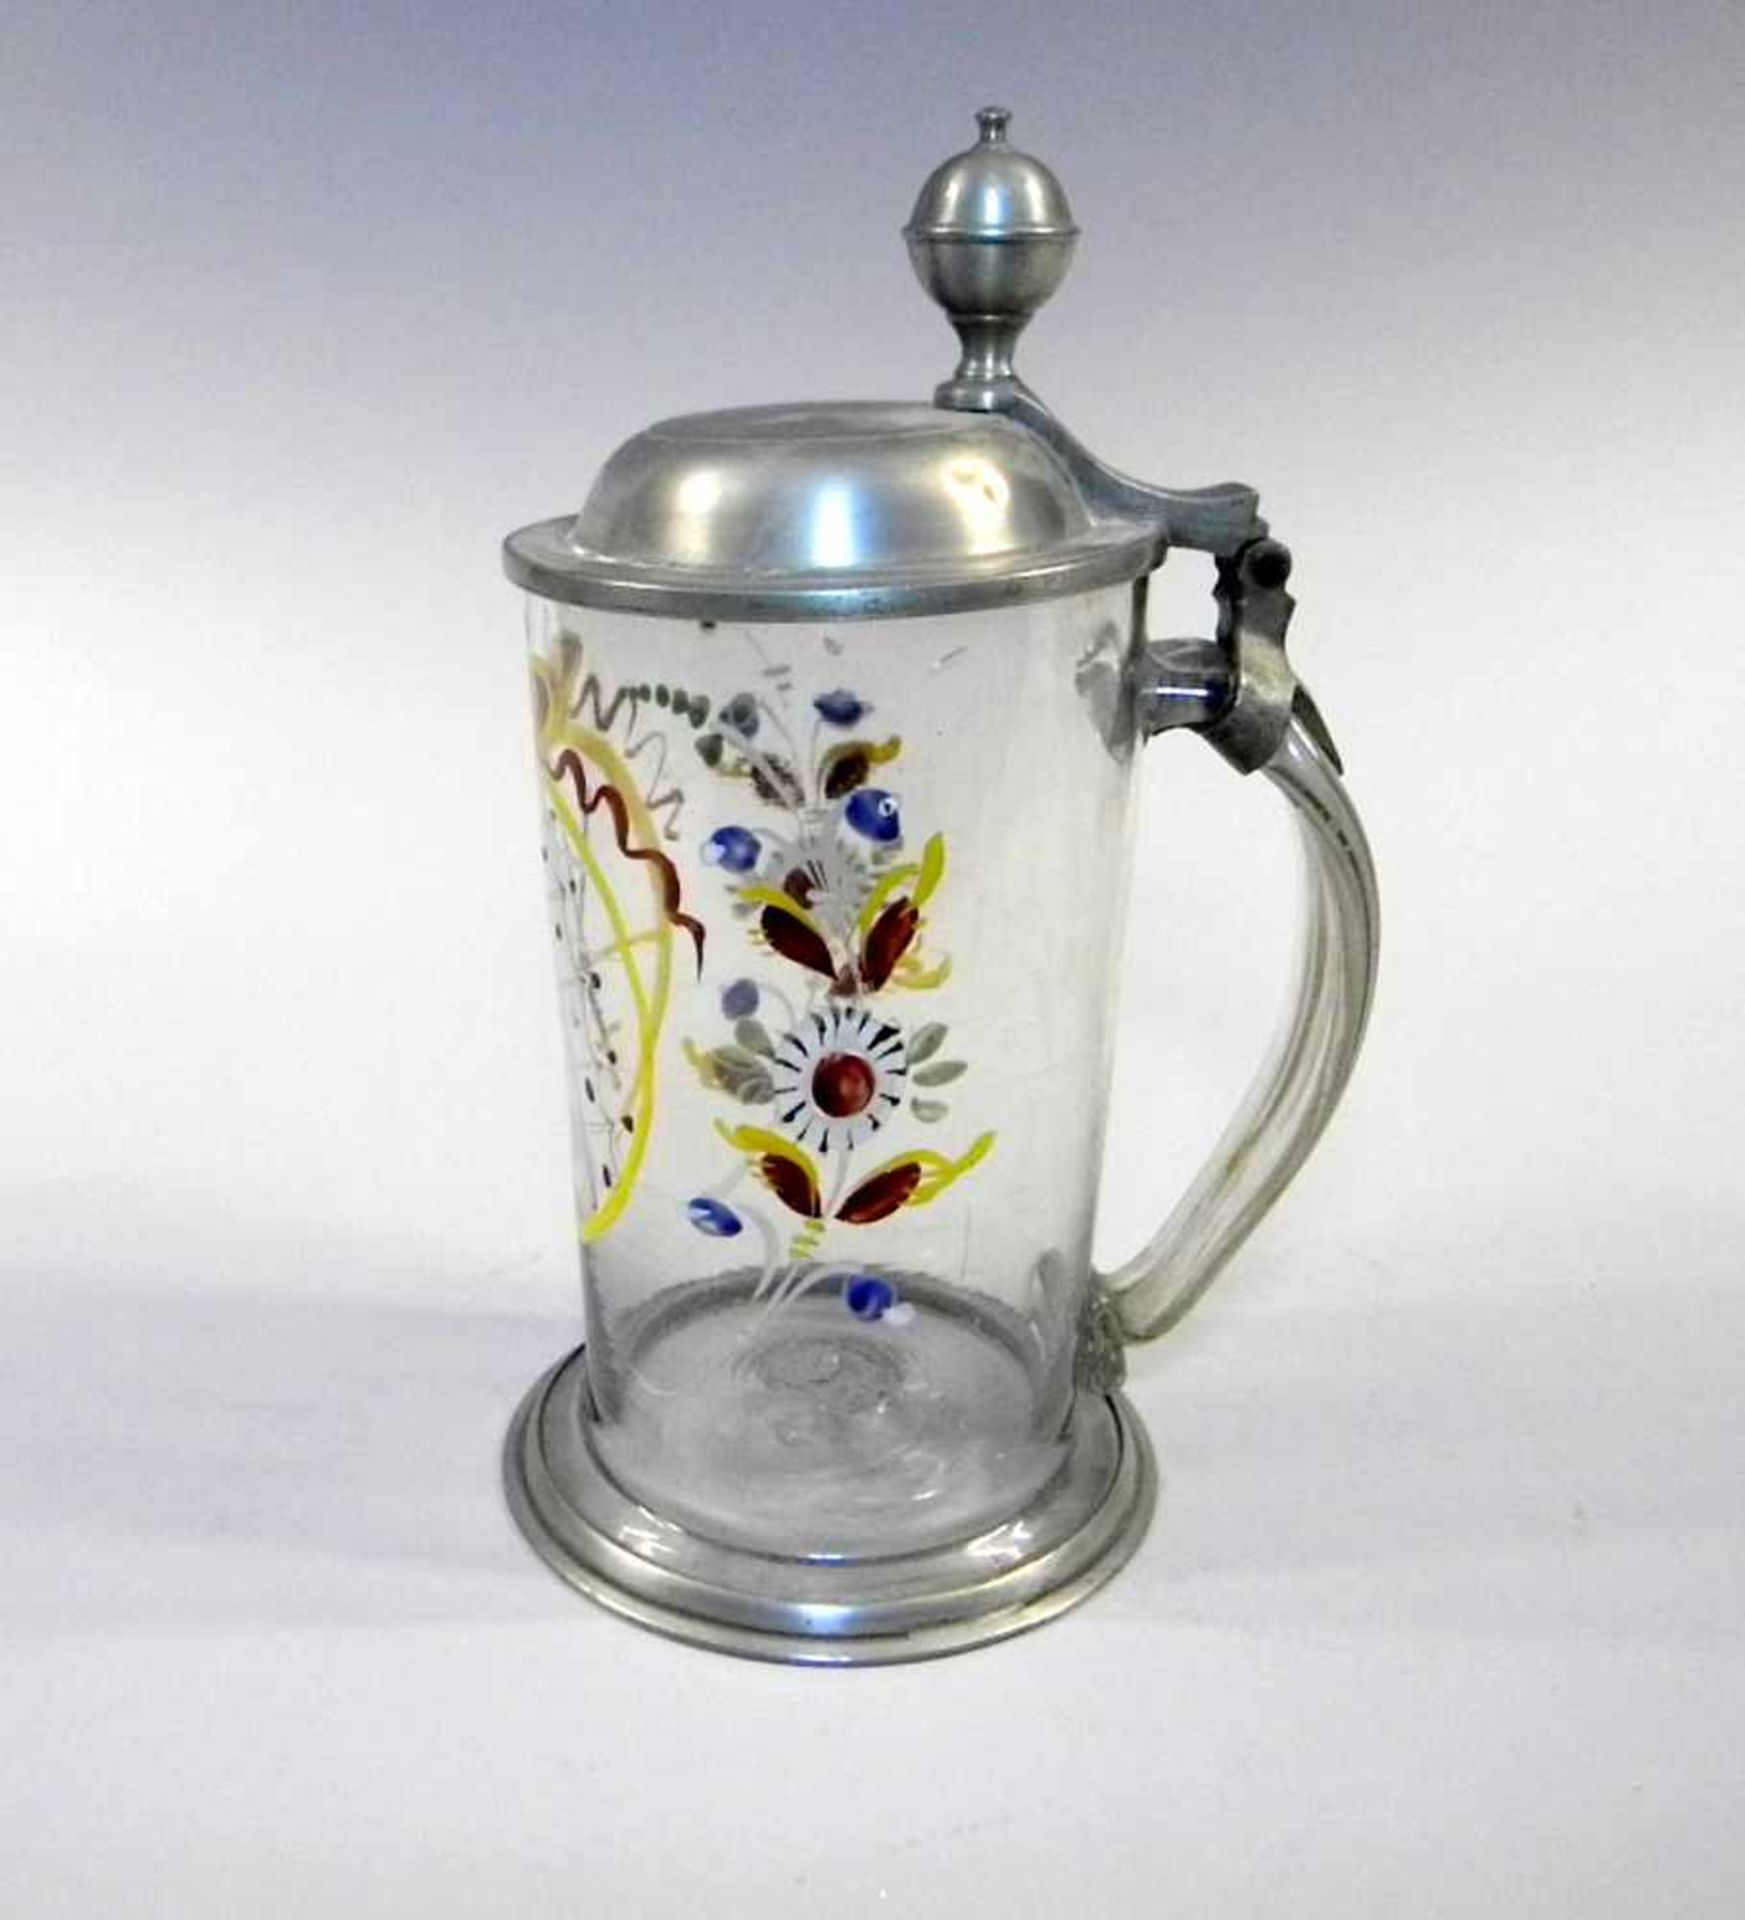 Glashumpen mit ZinnmonturKlarglas, mit Zinnmontur. Krug mit Blumenstempel und sächsischem